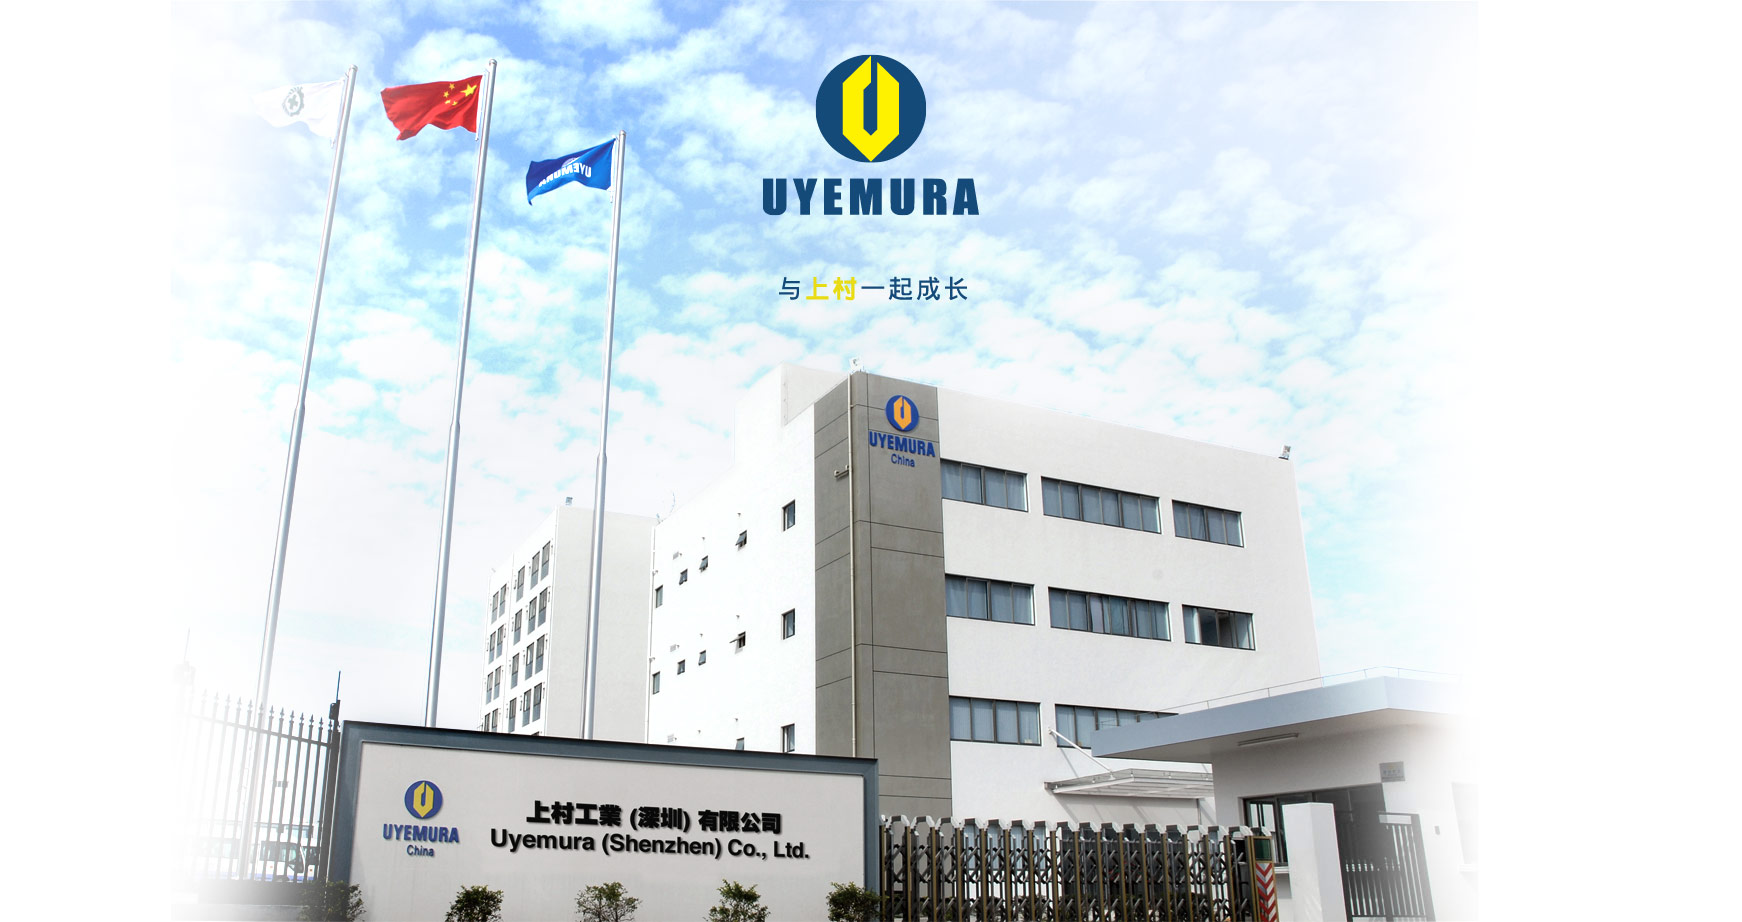 Welcome to Uyemura. 上村工业深圳有限公司成立于1988年，是上村香港有限公司全资拥有的附属公司。为业界提供表面处理化学药品及电镀设备，致力为中国内地及亚洲其他新兴市场的各行各业提供服务。